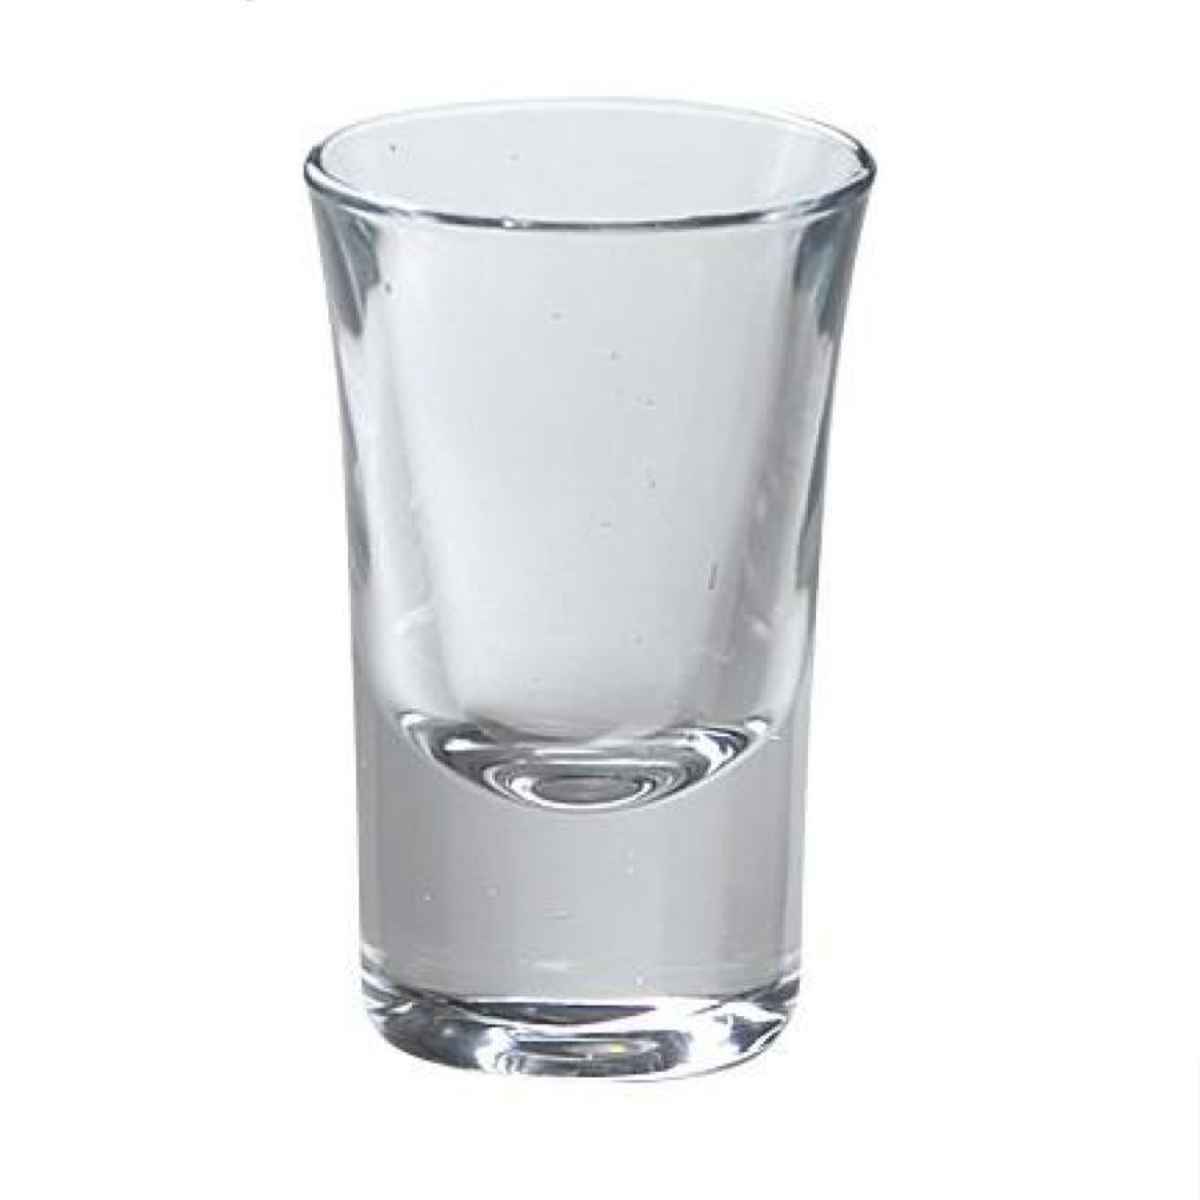 ボルミオリ・ロッコ ショットグラス 34ml DUBLINO ダブリノ ガラス グラス コップ カップ ブランデー テキーラ お酒 ドリンク 前菜 デザート 小物入れ 小さめ 【39ショップ】